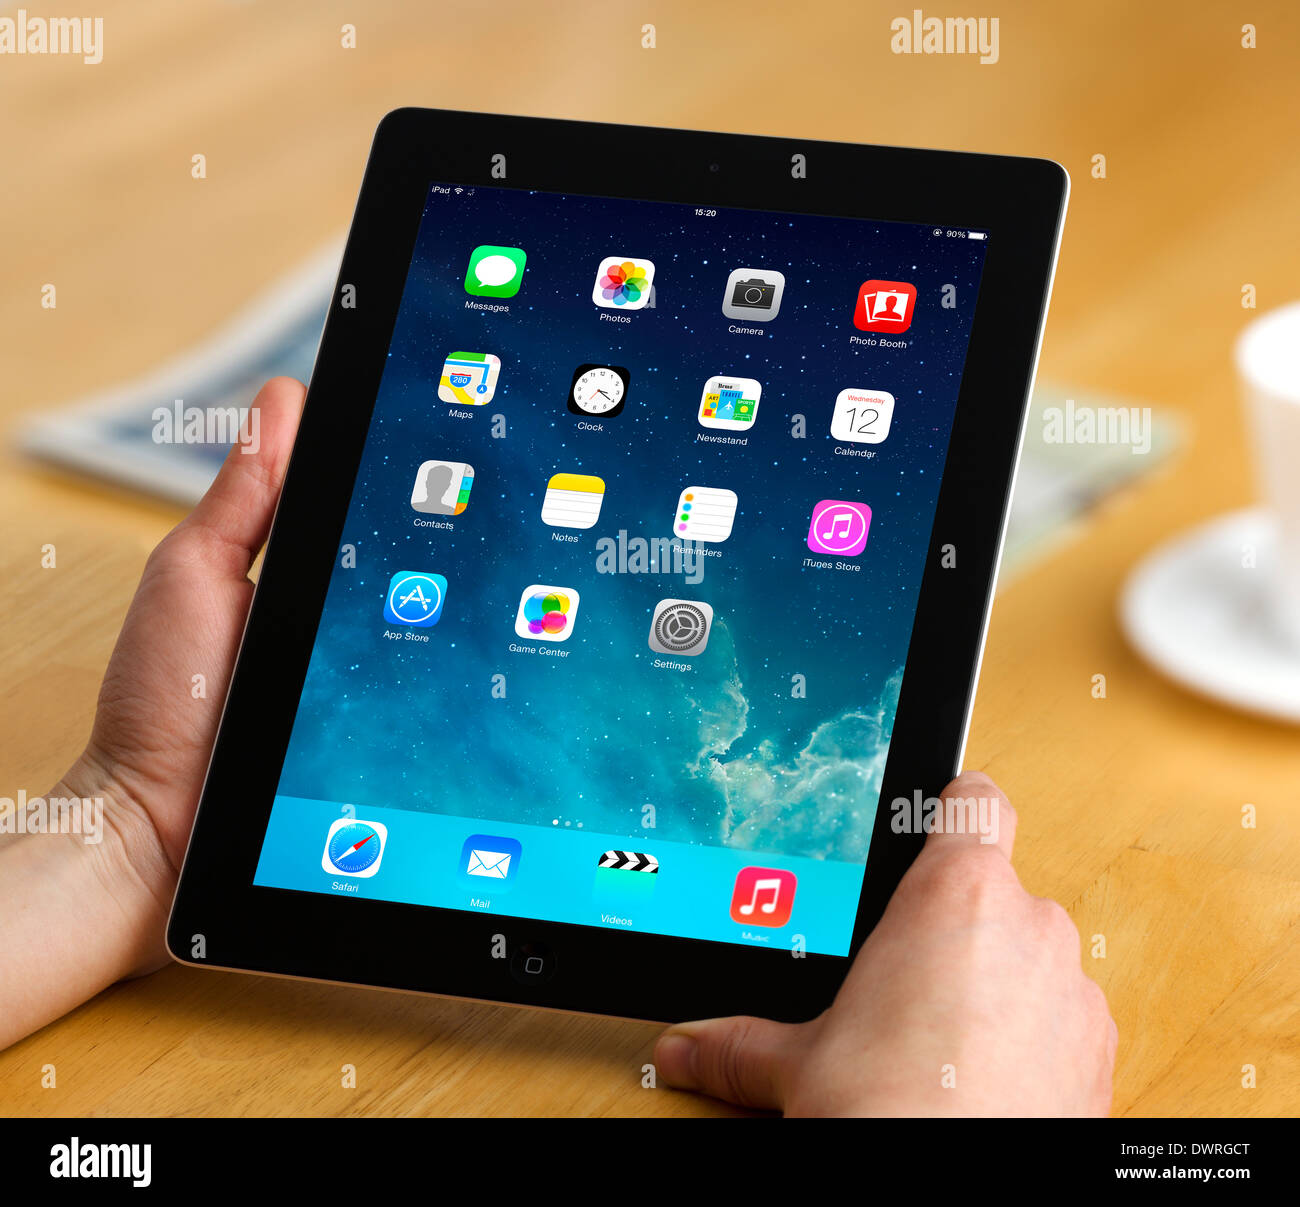 IOS 7.1 pantalla de inicio en un Apple iPad 4ª generación retina display tablet pc Foto de stock